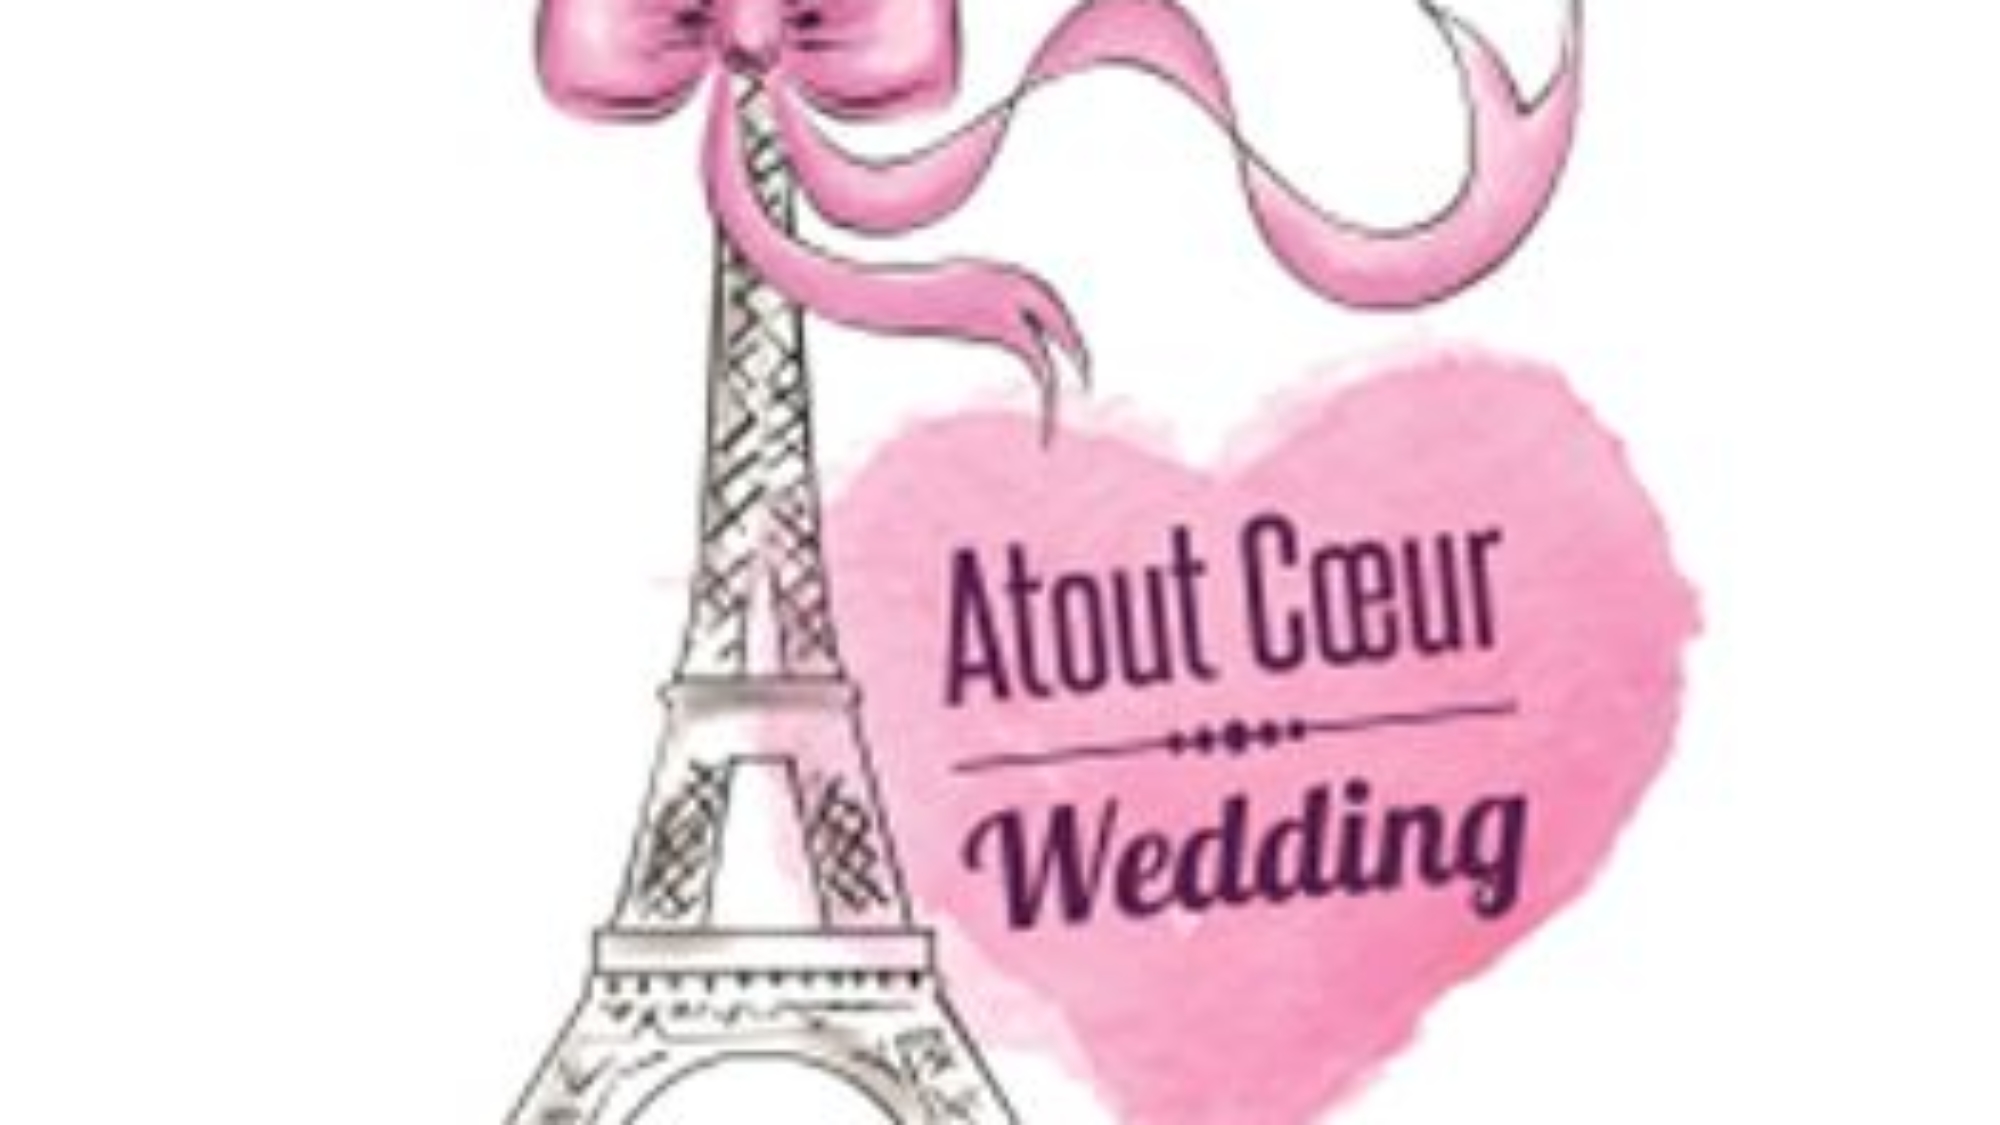 logo atout coeur wedding - coworker chez myCowork Montorgueilespace de coworking à Paris